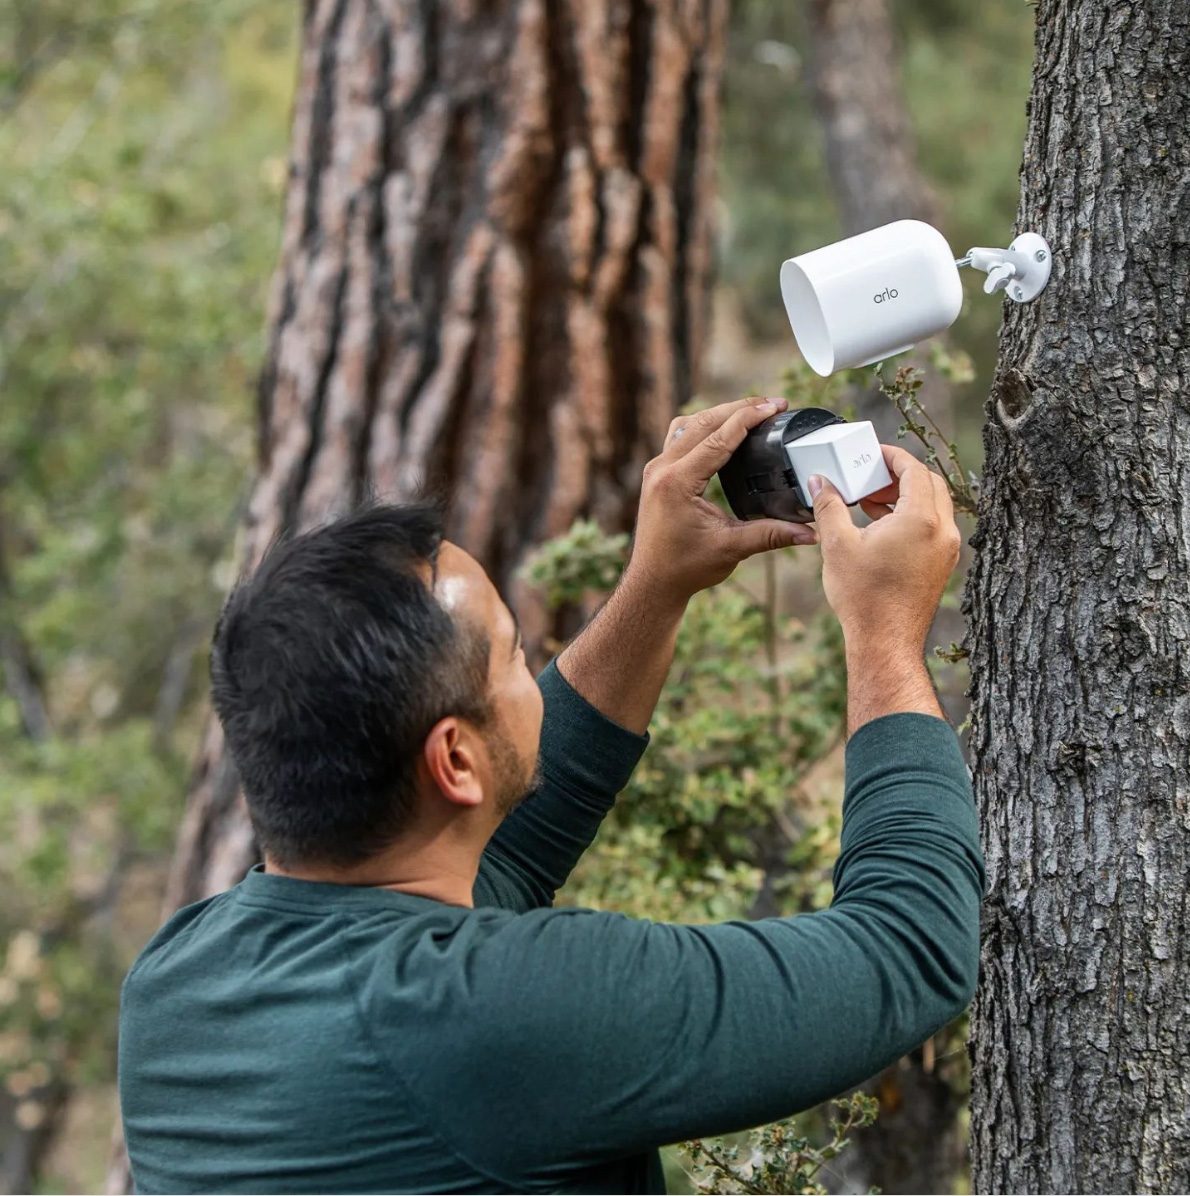  Lien sur une publication Instagram montrant un homme installant la caméra de sécurité Arlo Go 2 contre un arbre